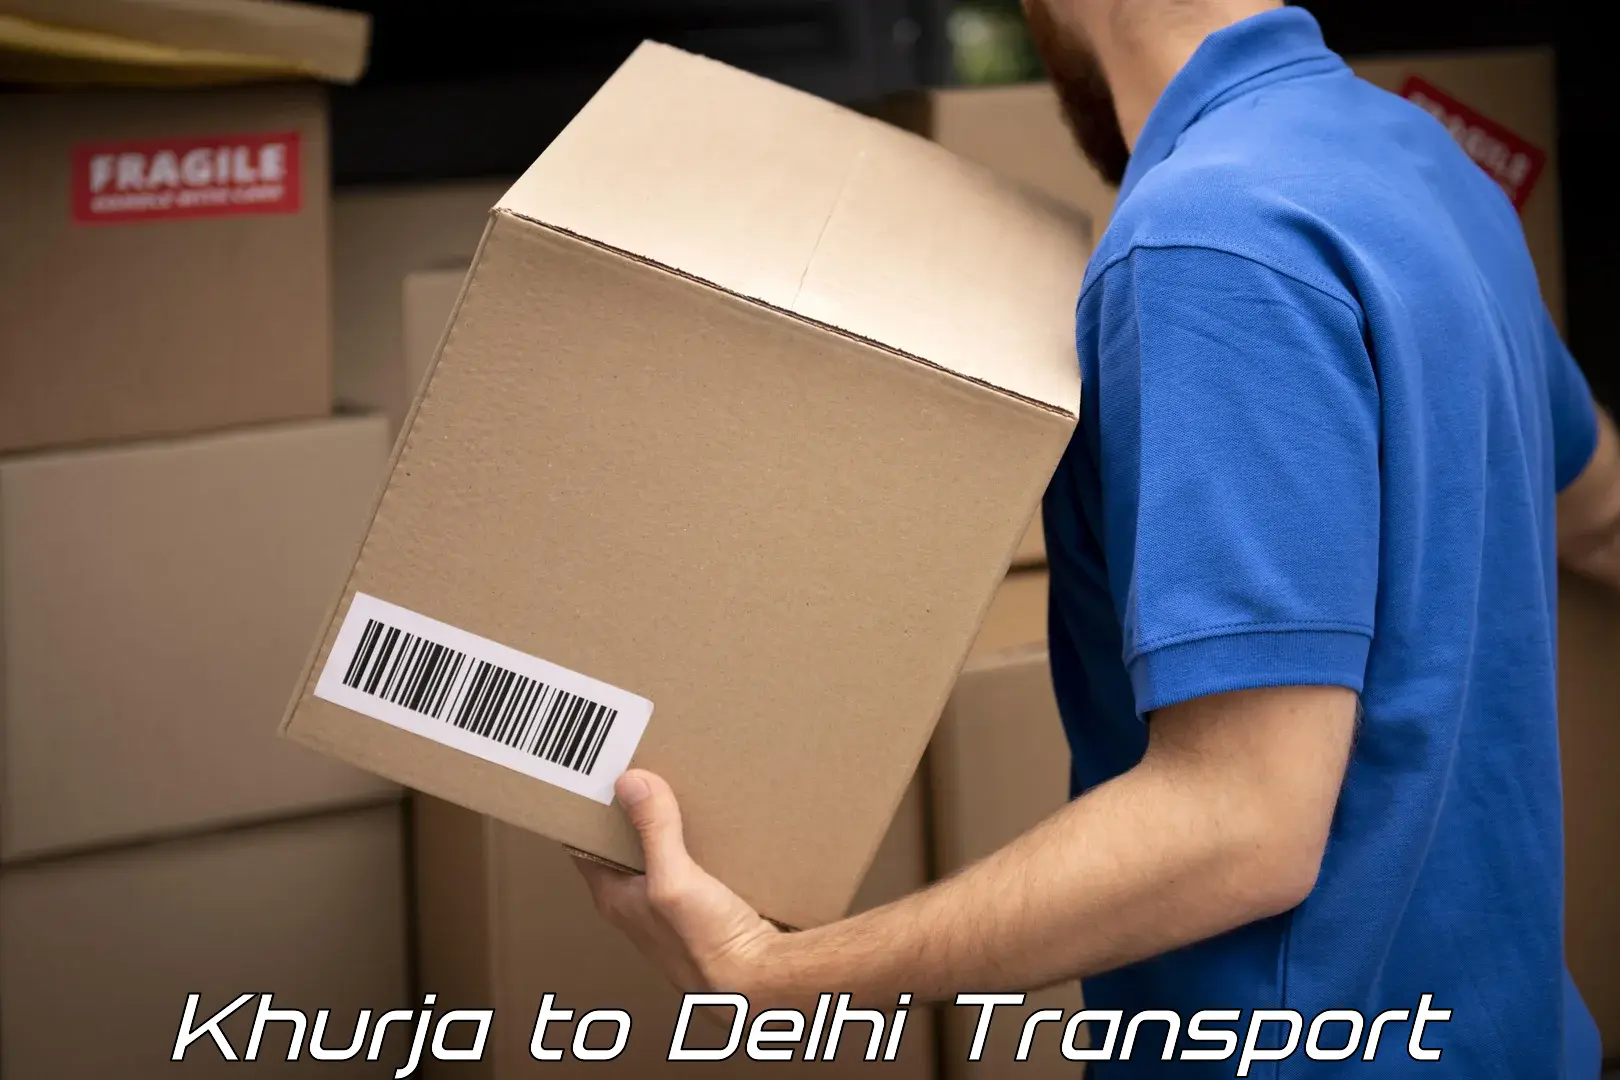 Sending bike to another city Khurja to NIT Delhi